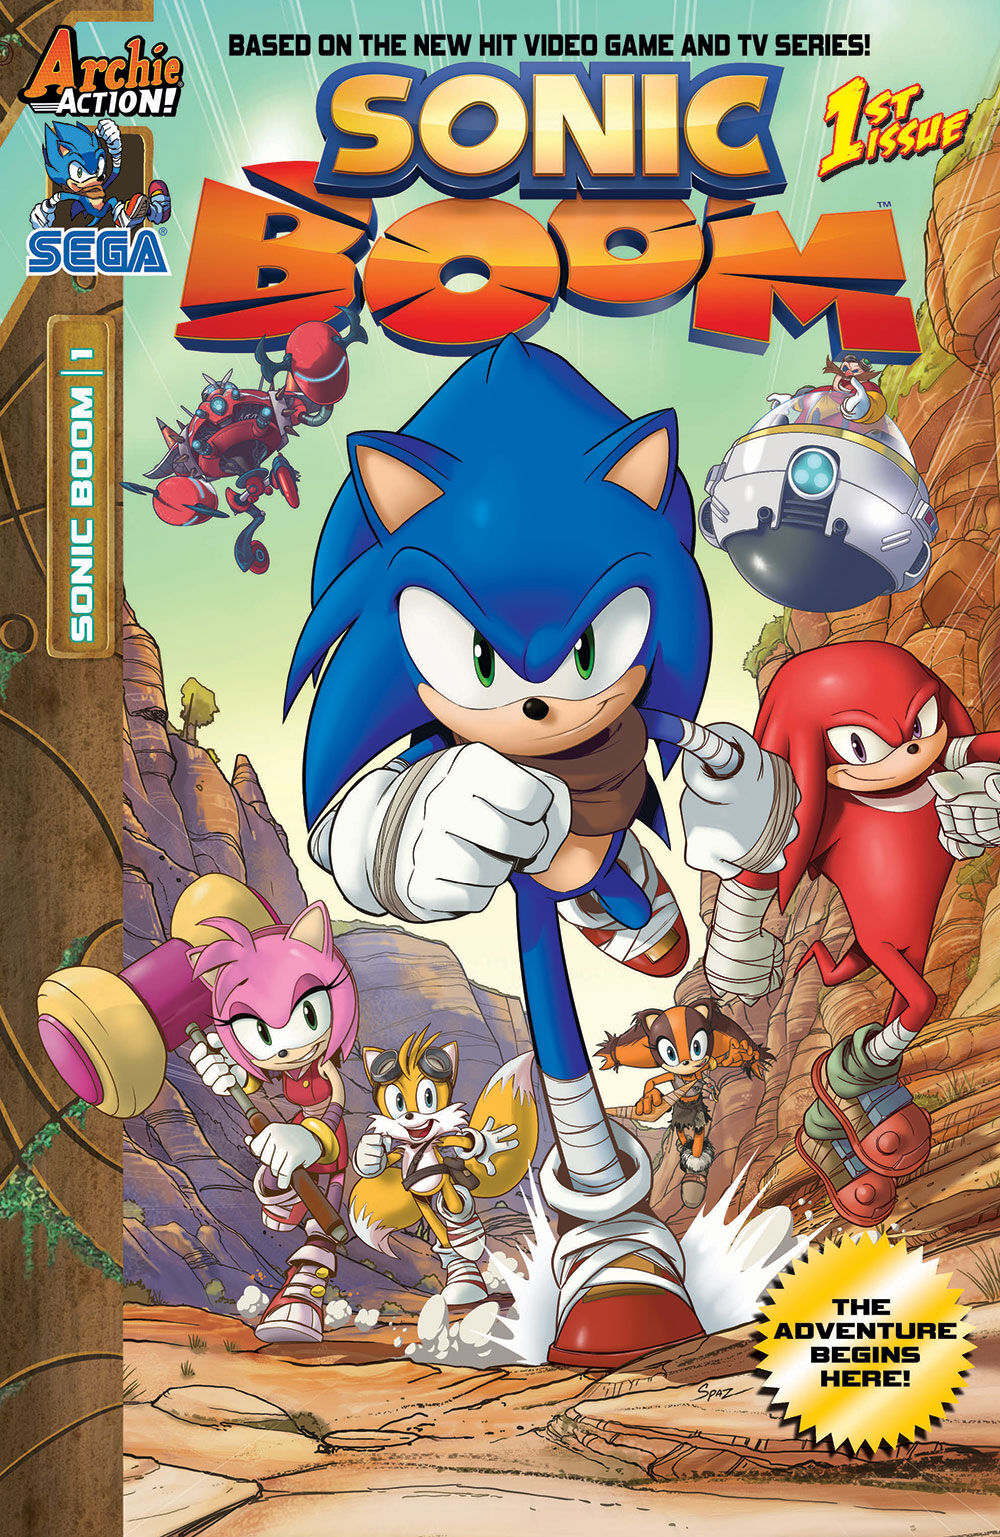 Sonic Boom Não é um Reboot Afirma Presidente da SEGA - InfoBrothers